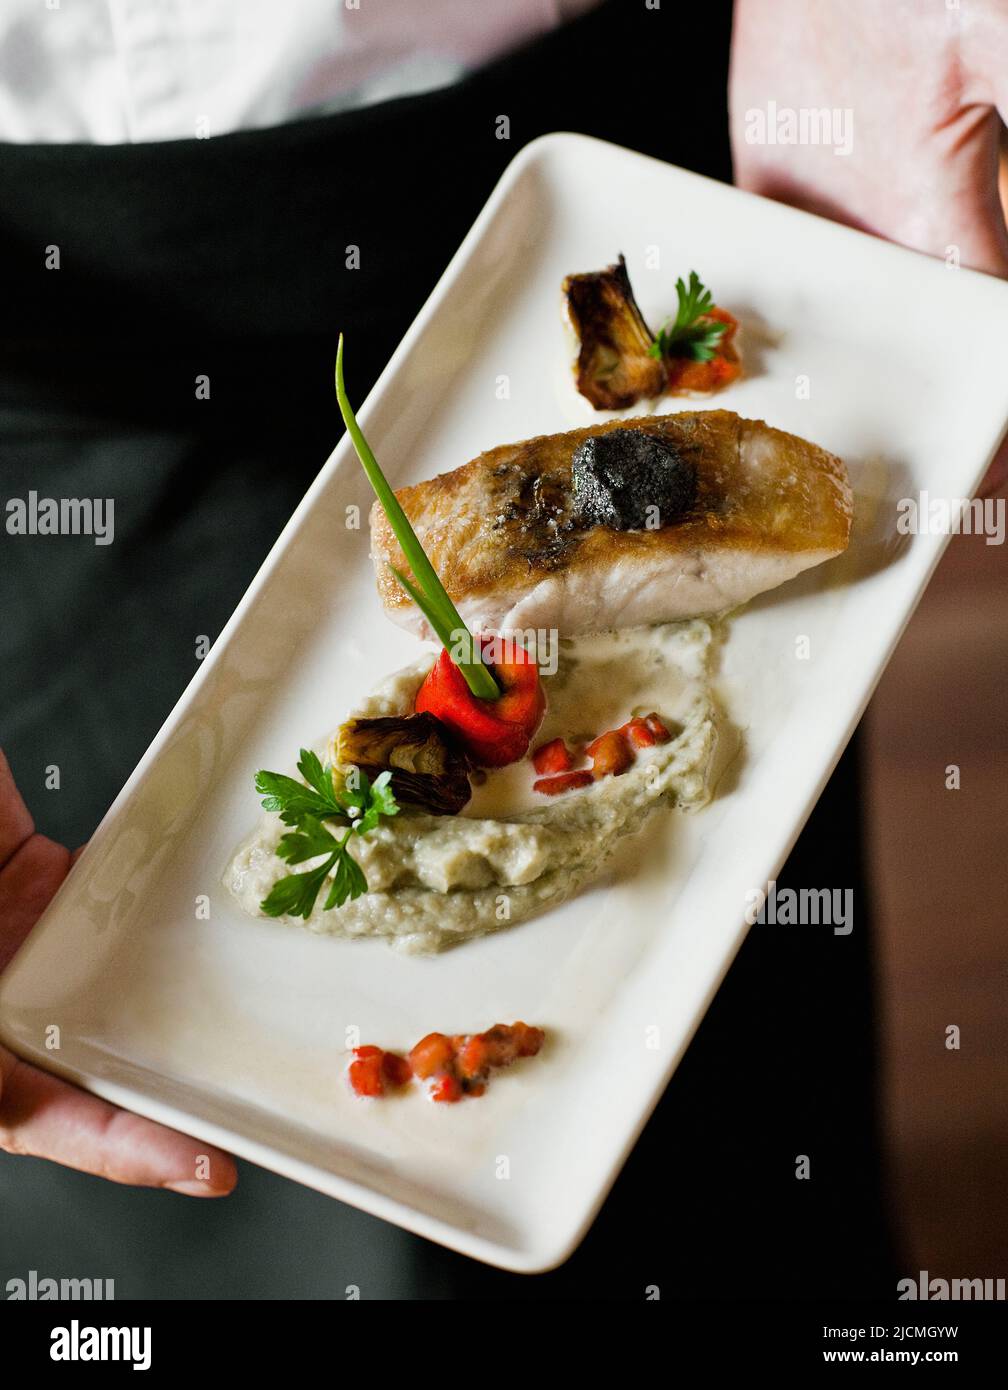 Geröstetes Seebarschfilet mit weicher olivfarbener Tapenade, Aubergine-Kaviar und Baby-Artischocken-Barigoule. Siem Reap, Kambodscha. Stockfoto